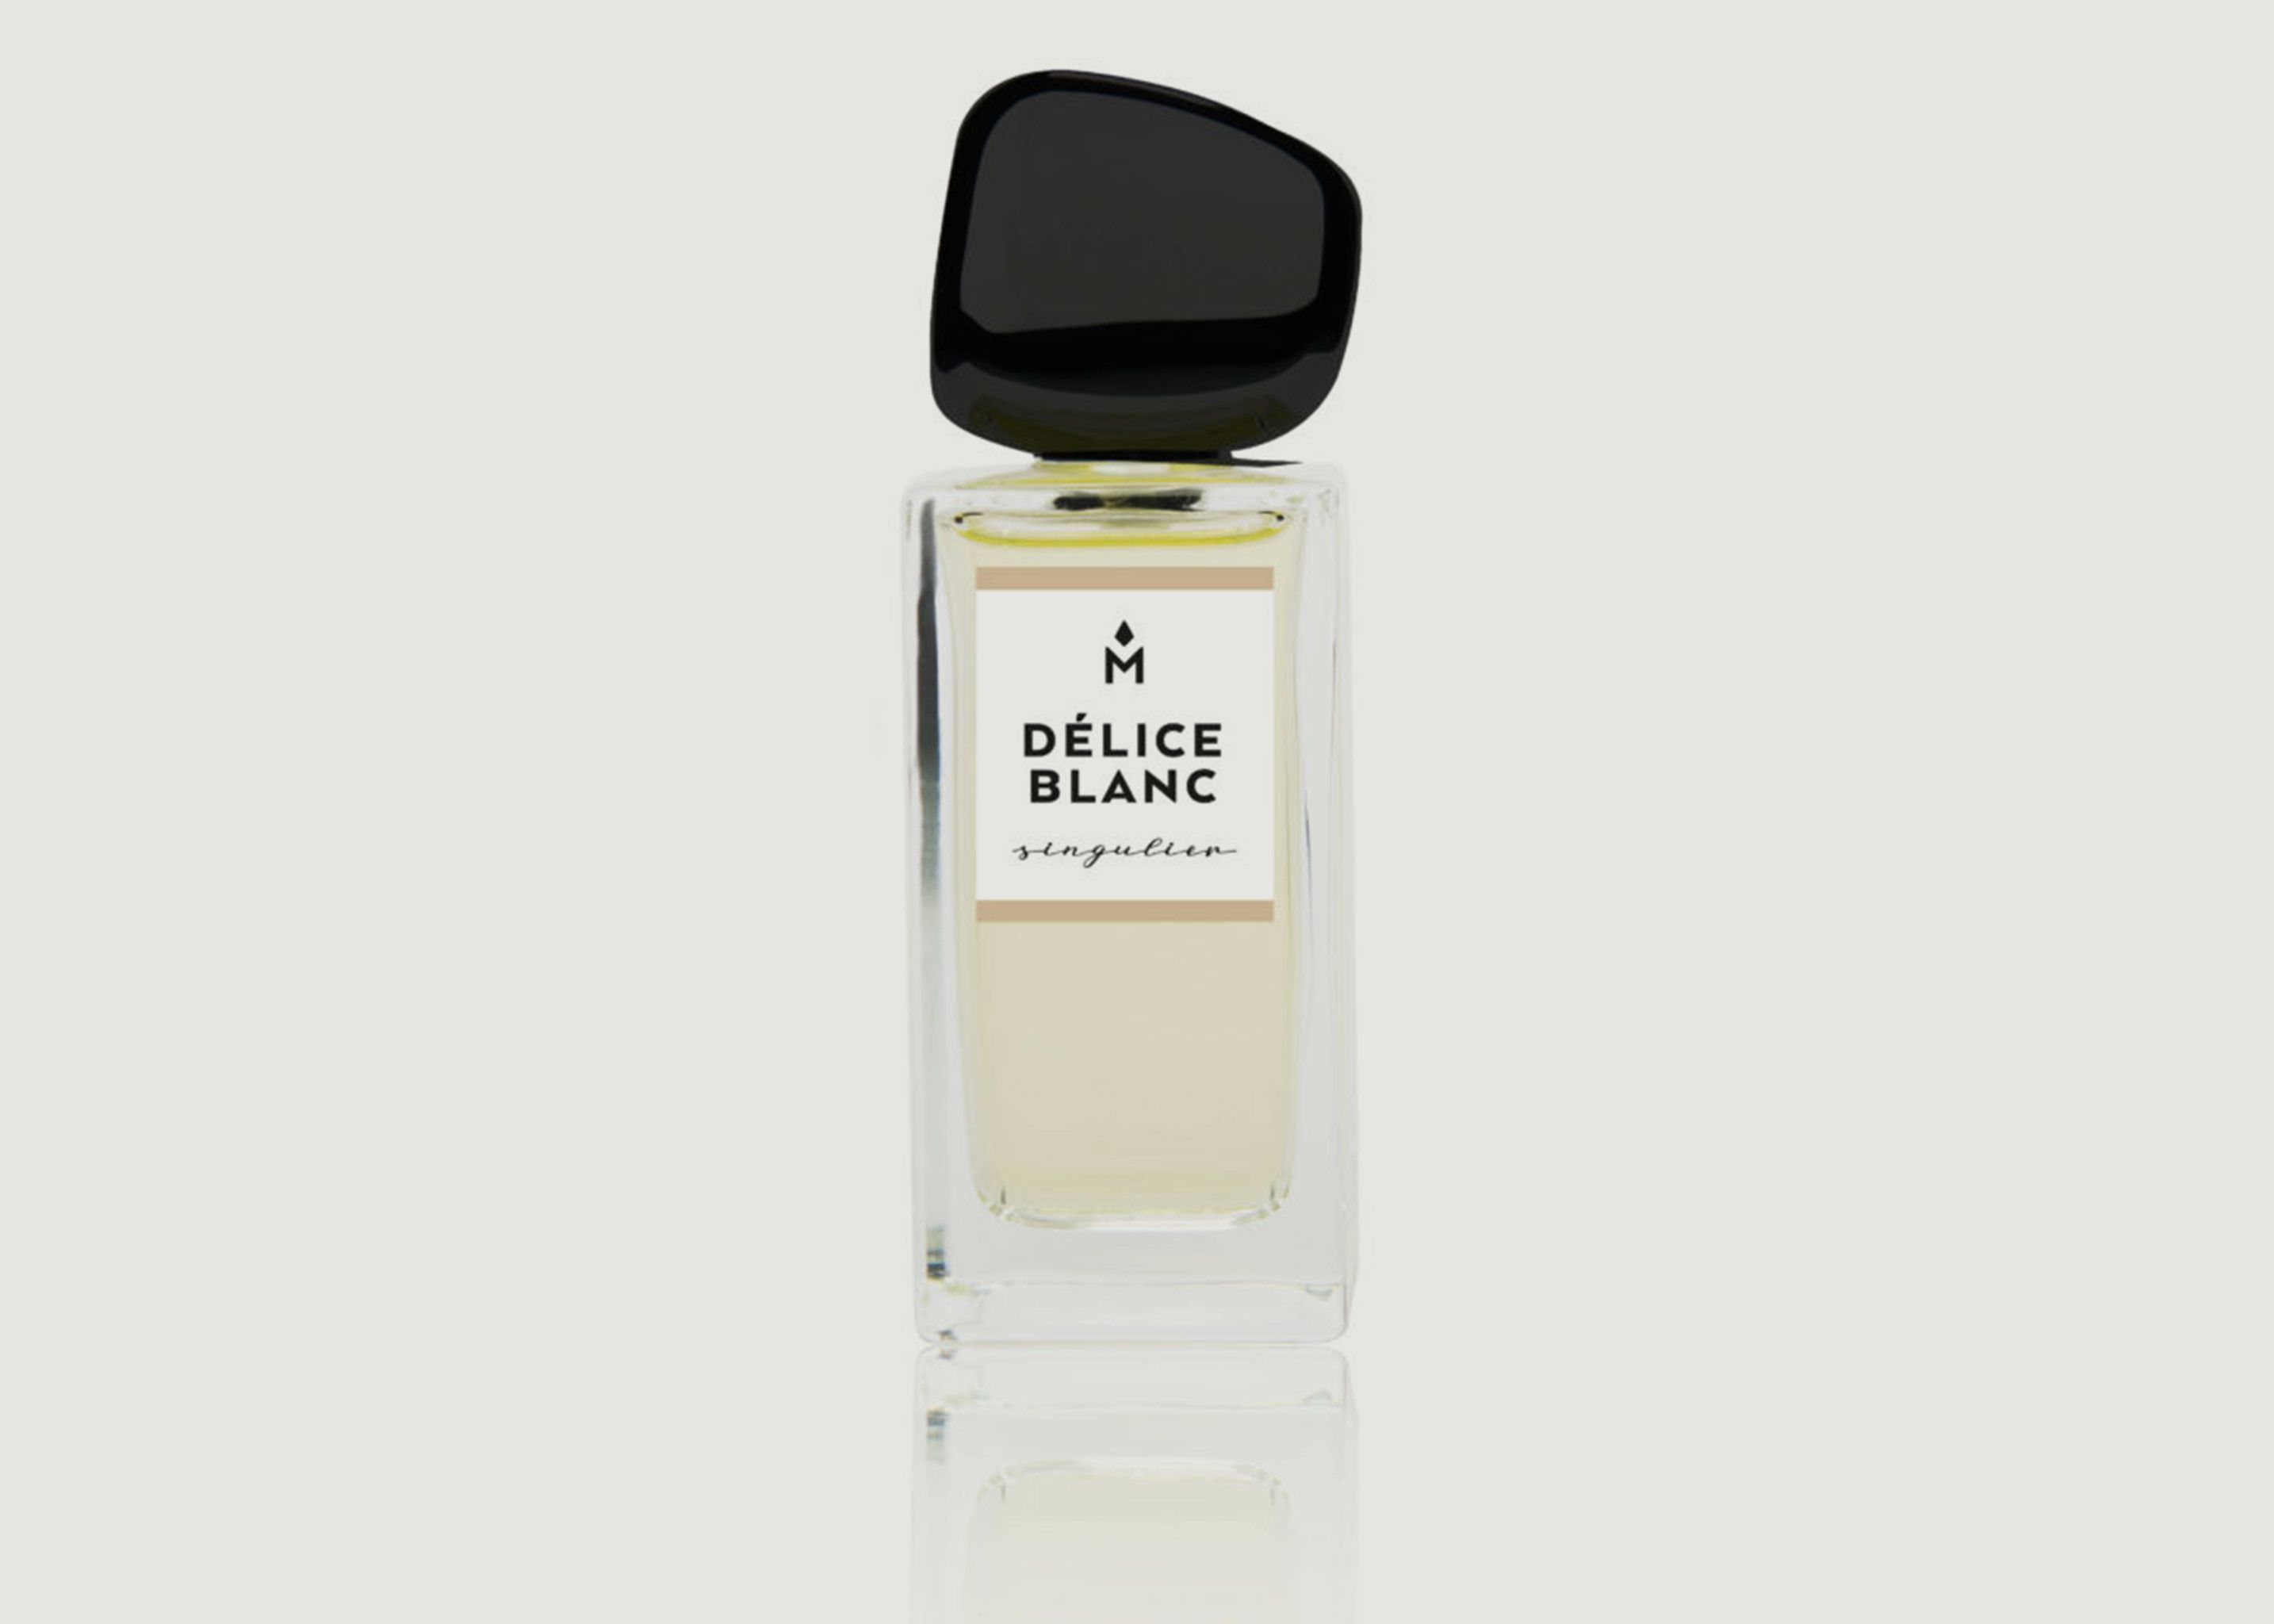 Délice Blanc 50ml Perfume - Ausmane Paris